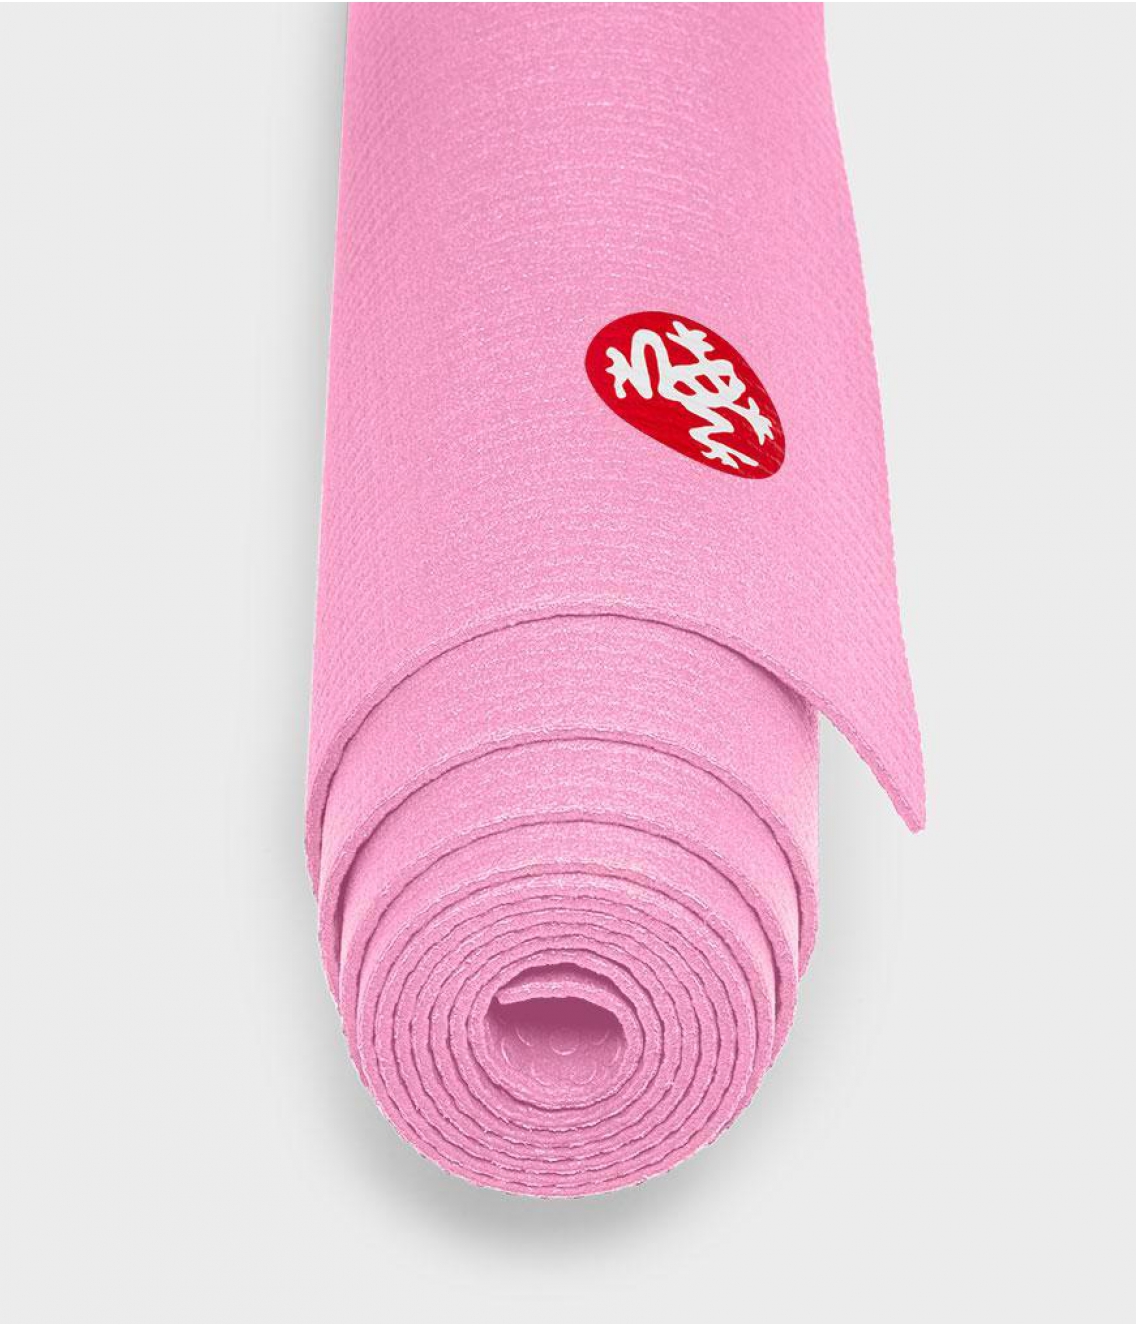 Профессиональный коврик для йоги из ПВХ Manduka PRO Travel 180*61*0,25 см - Fuchsia (Limited Edition)